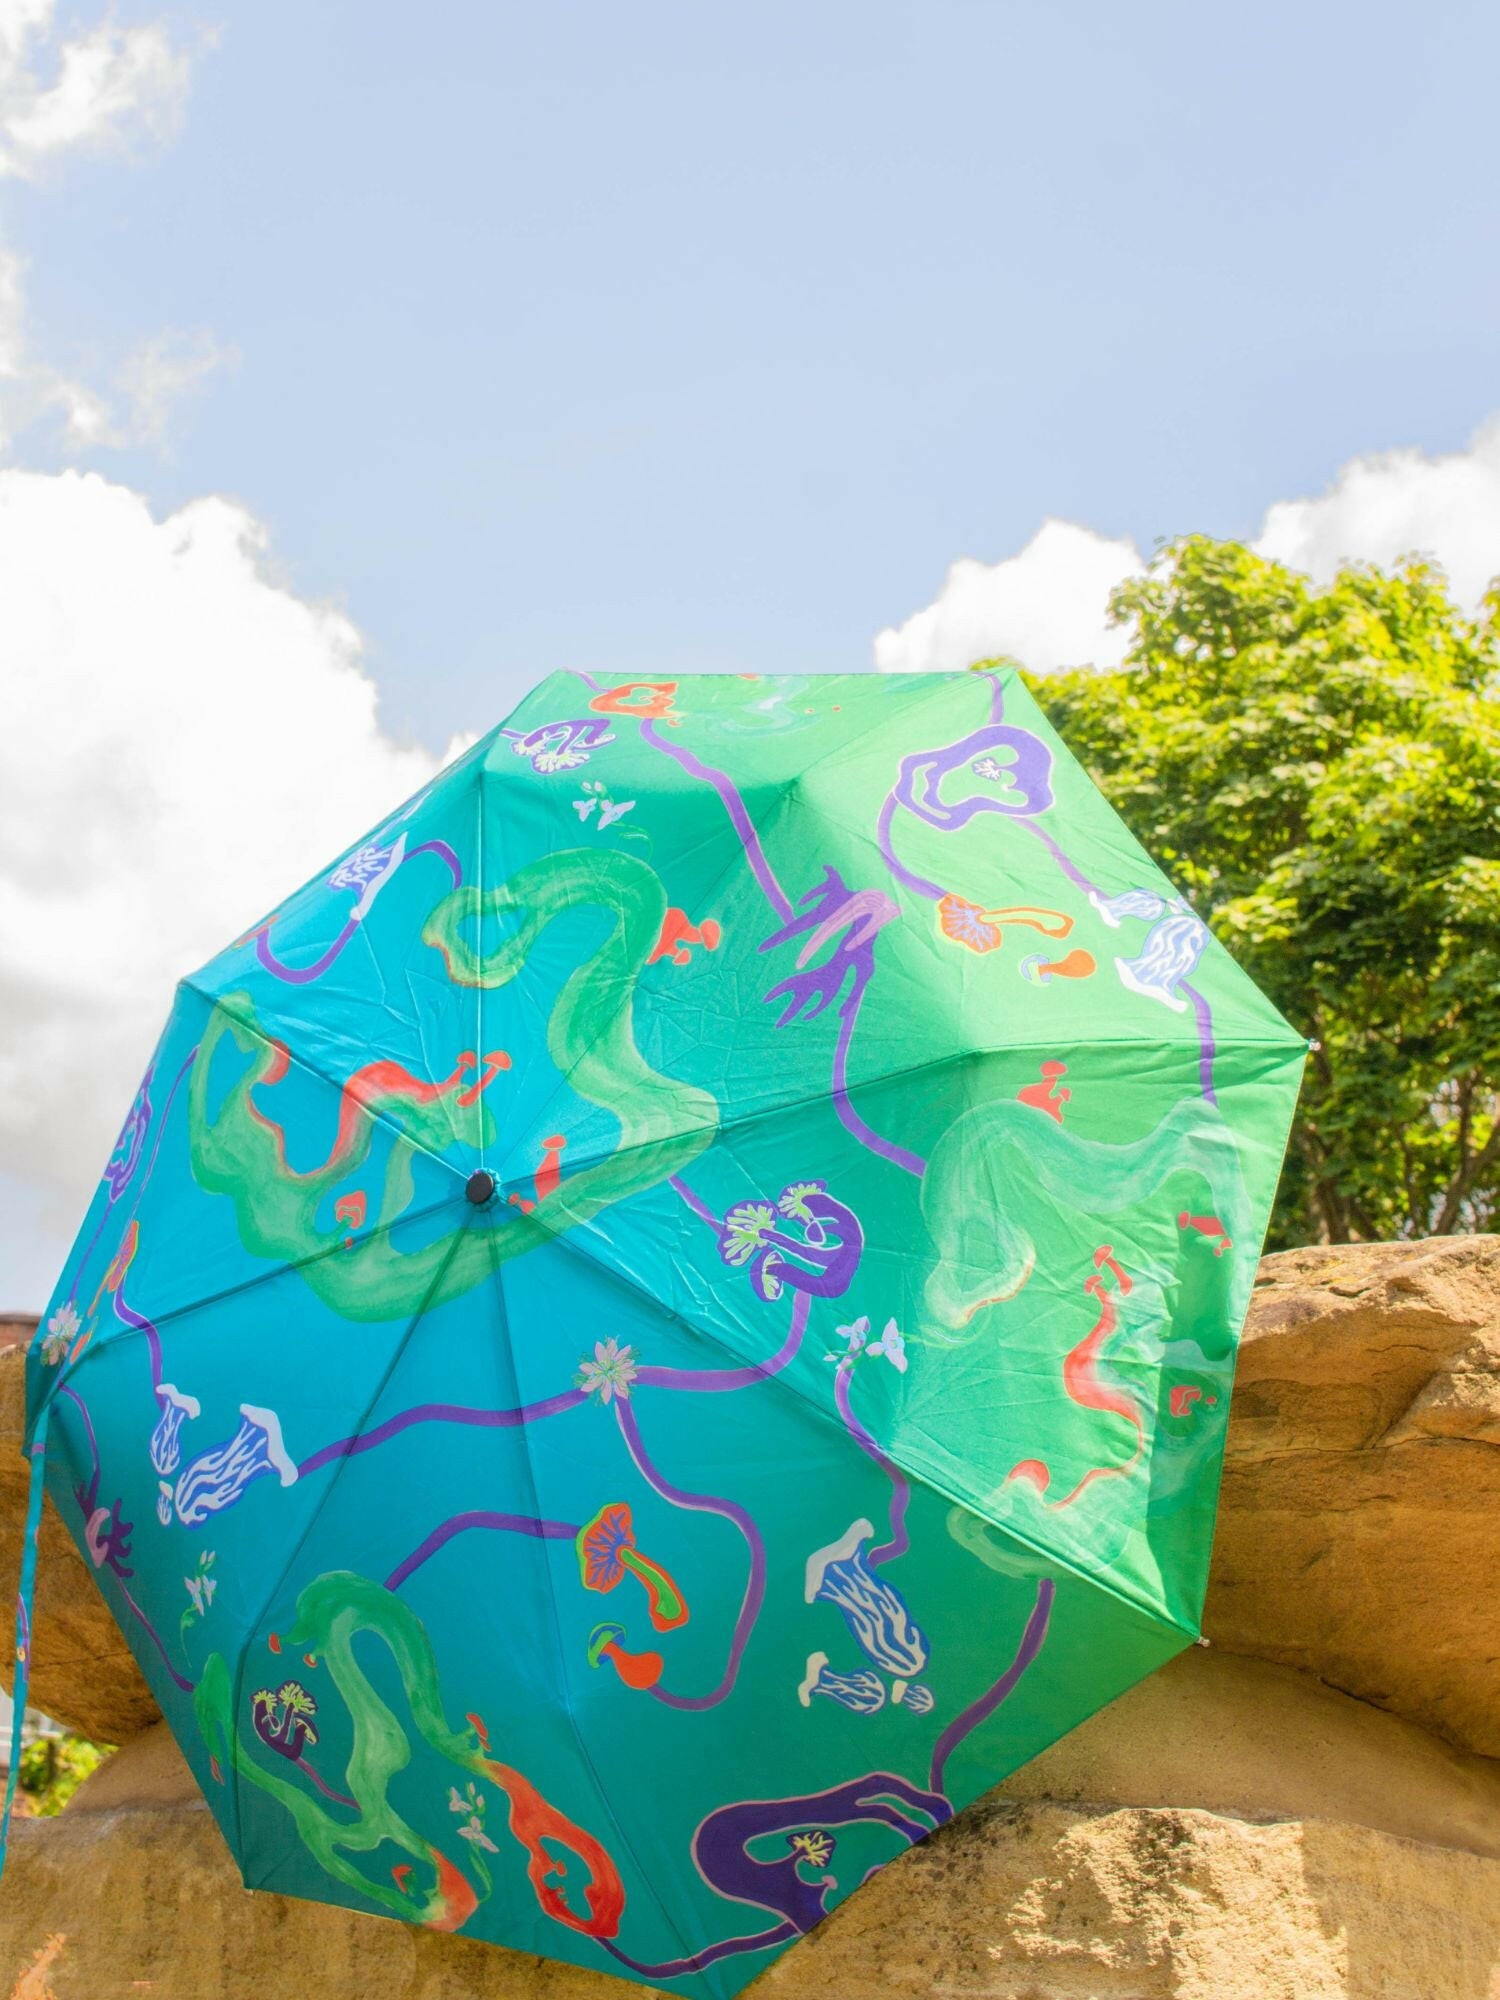 Aqua Fungi Eco-friendly Umbrella.